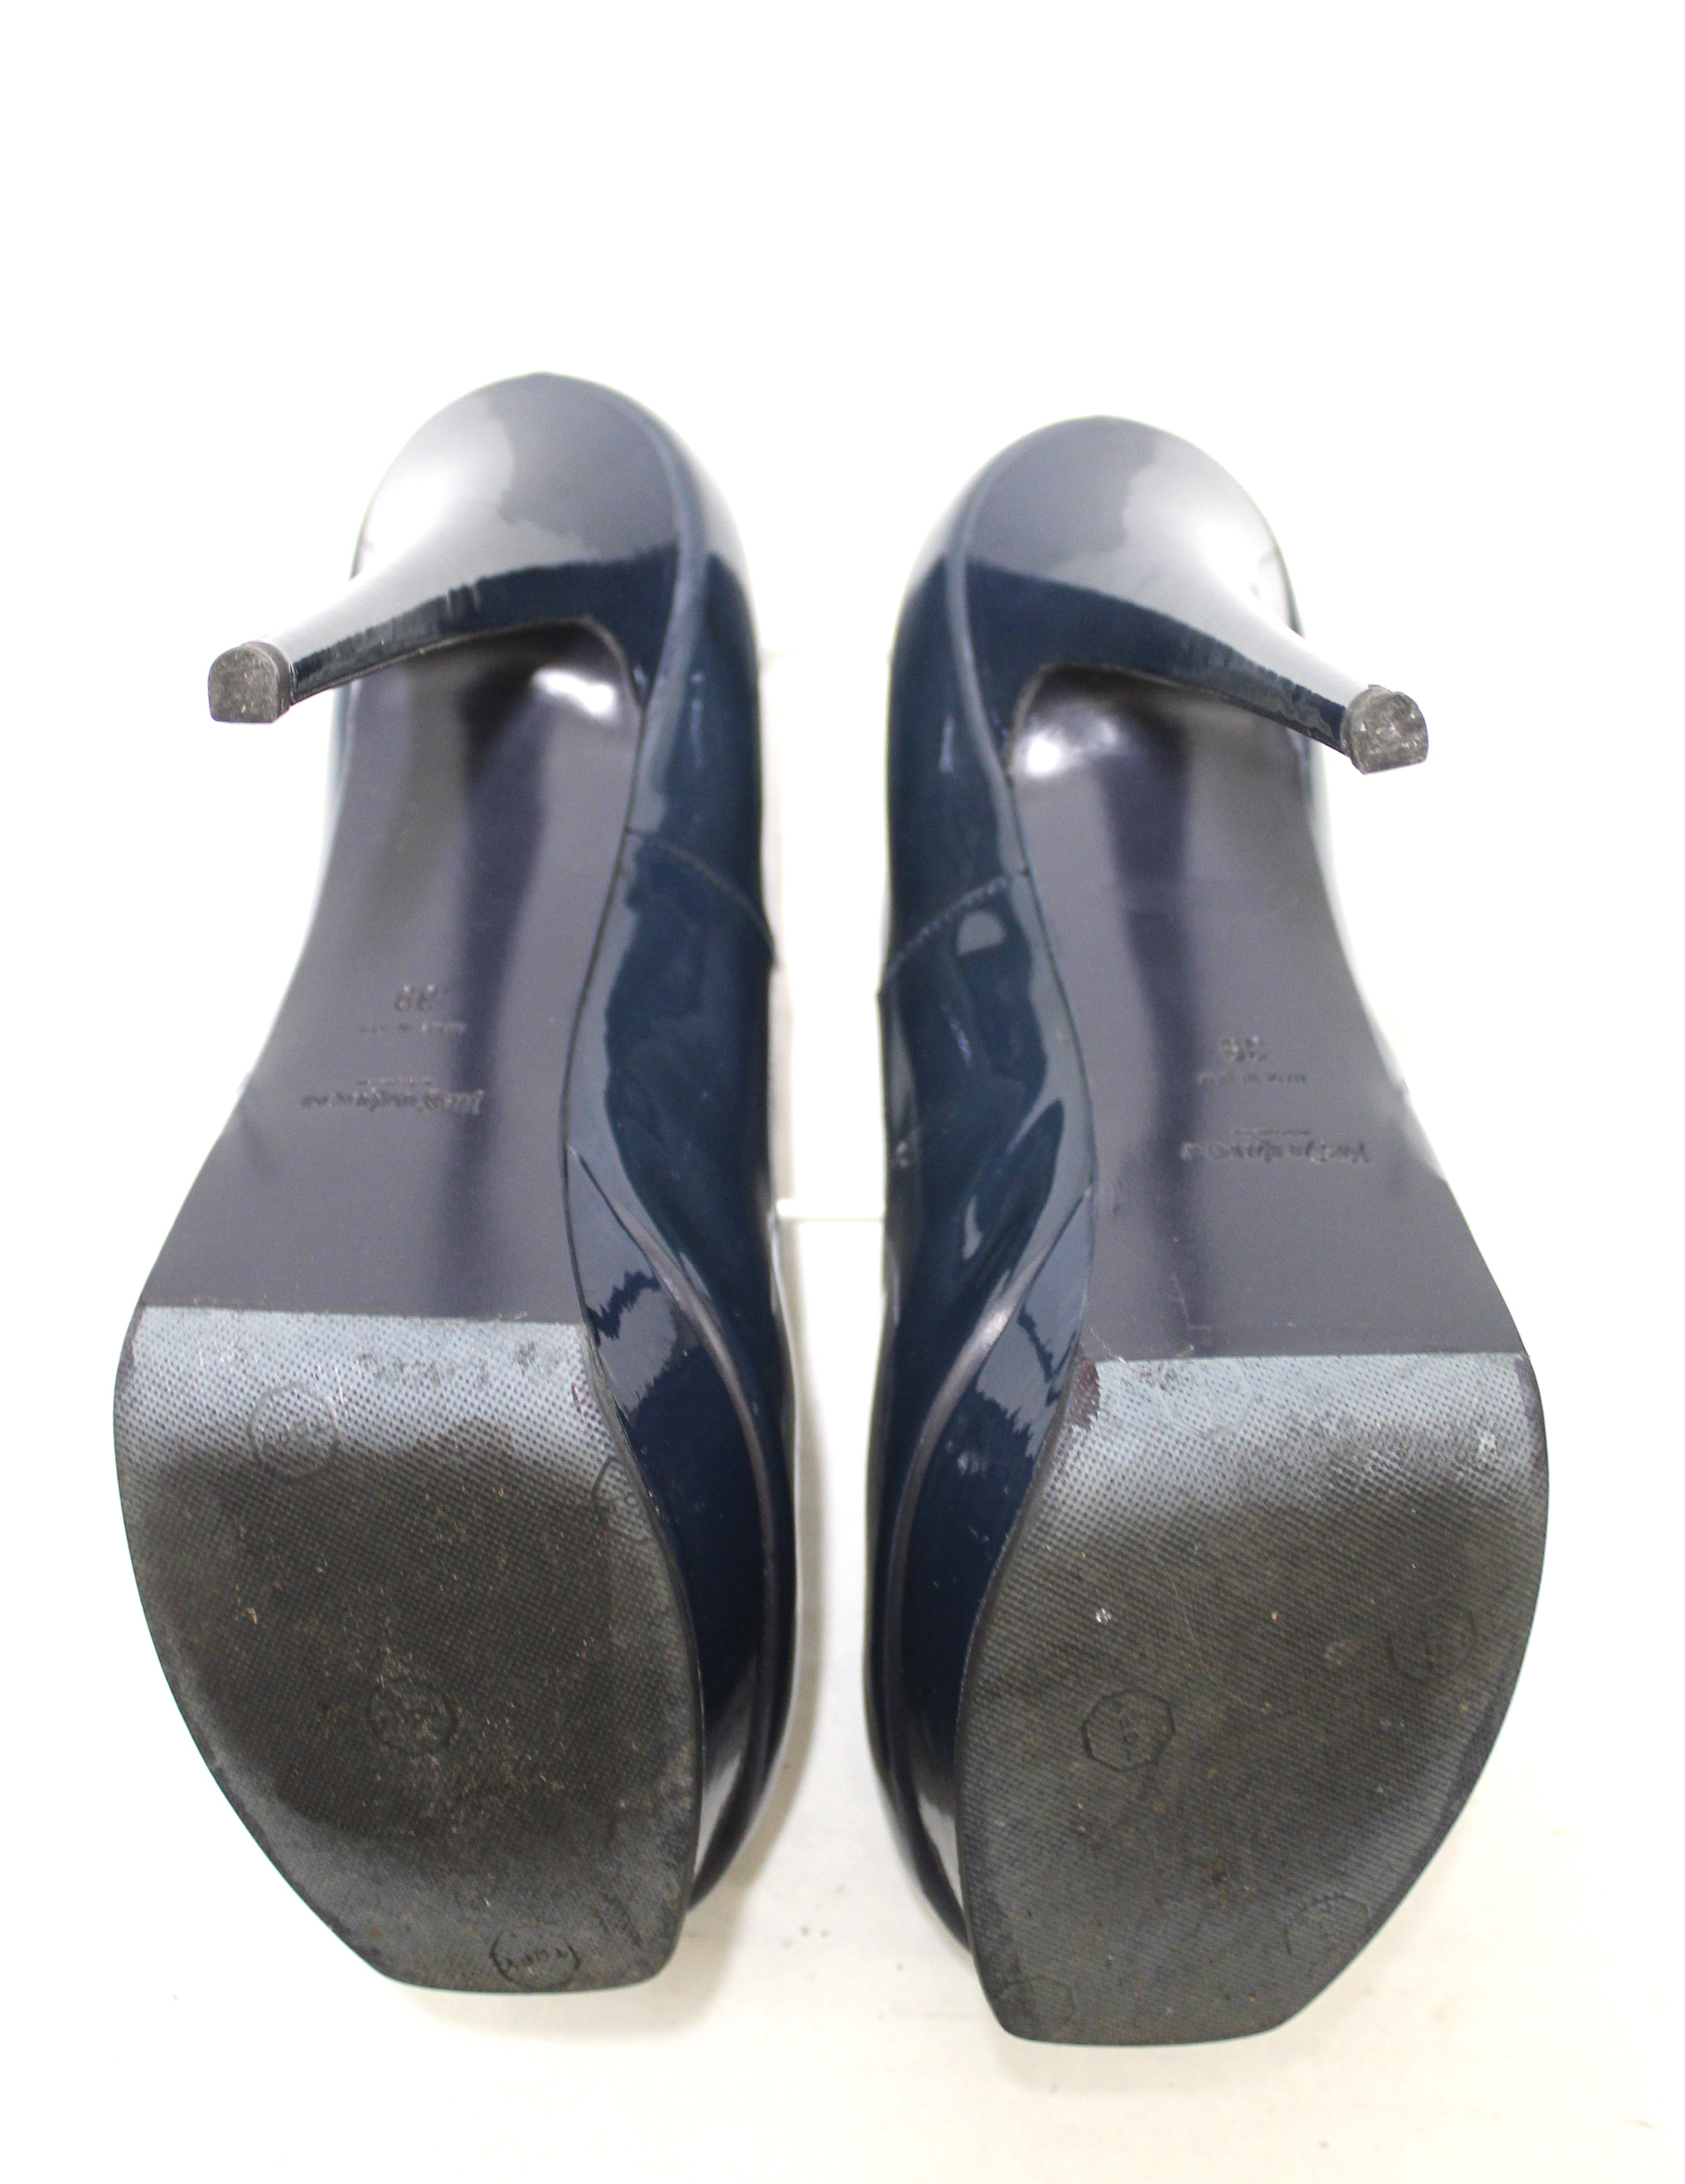 Authentic YSL Yves Saint Laurent Blue Tribute Pumps Shoes Size 39